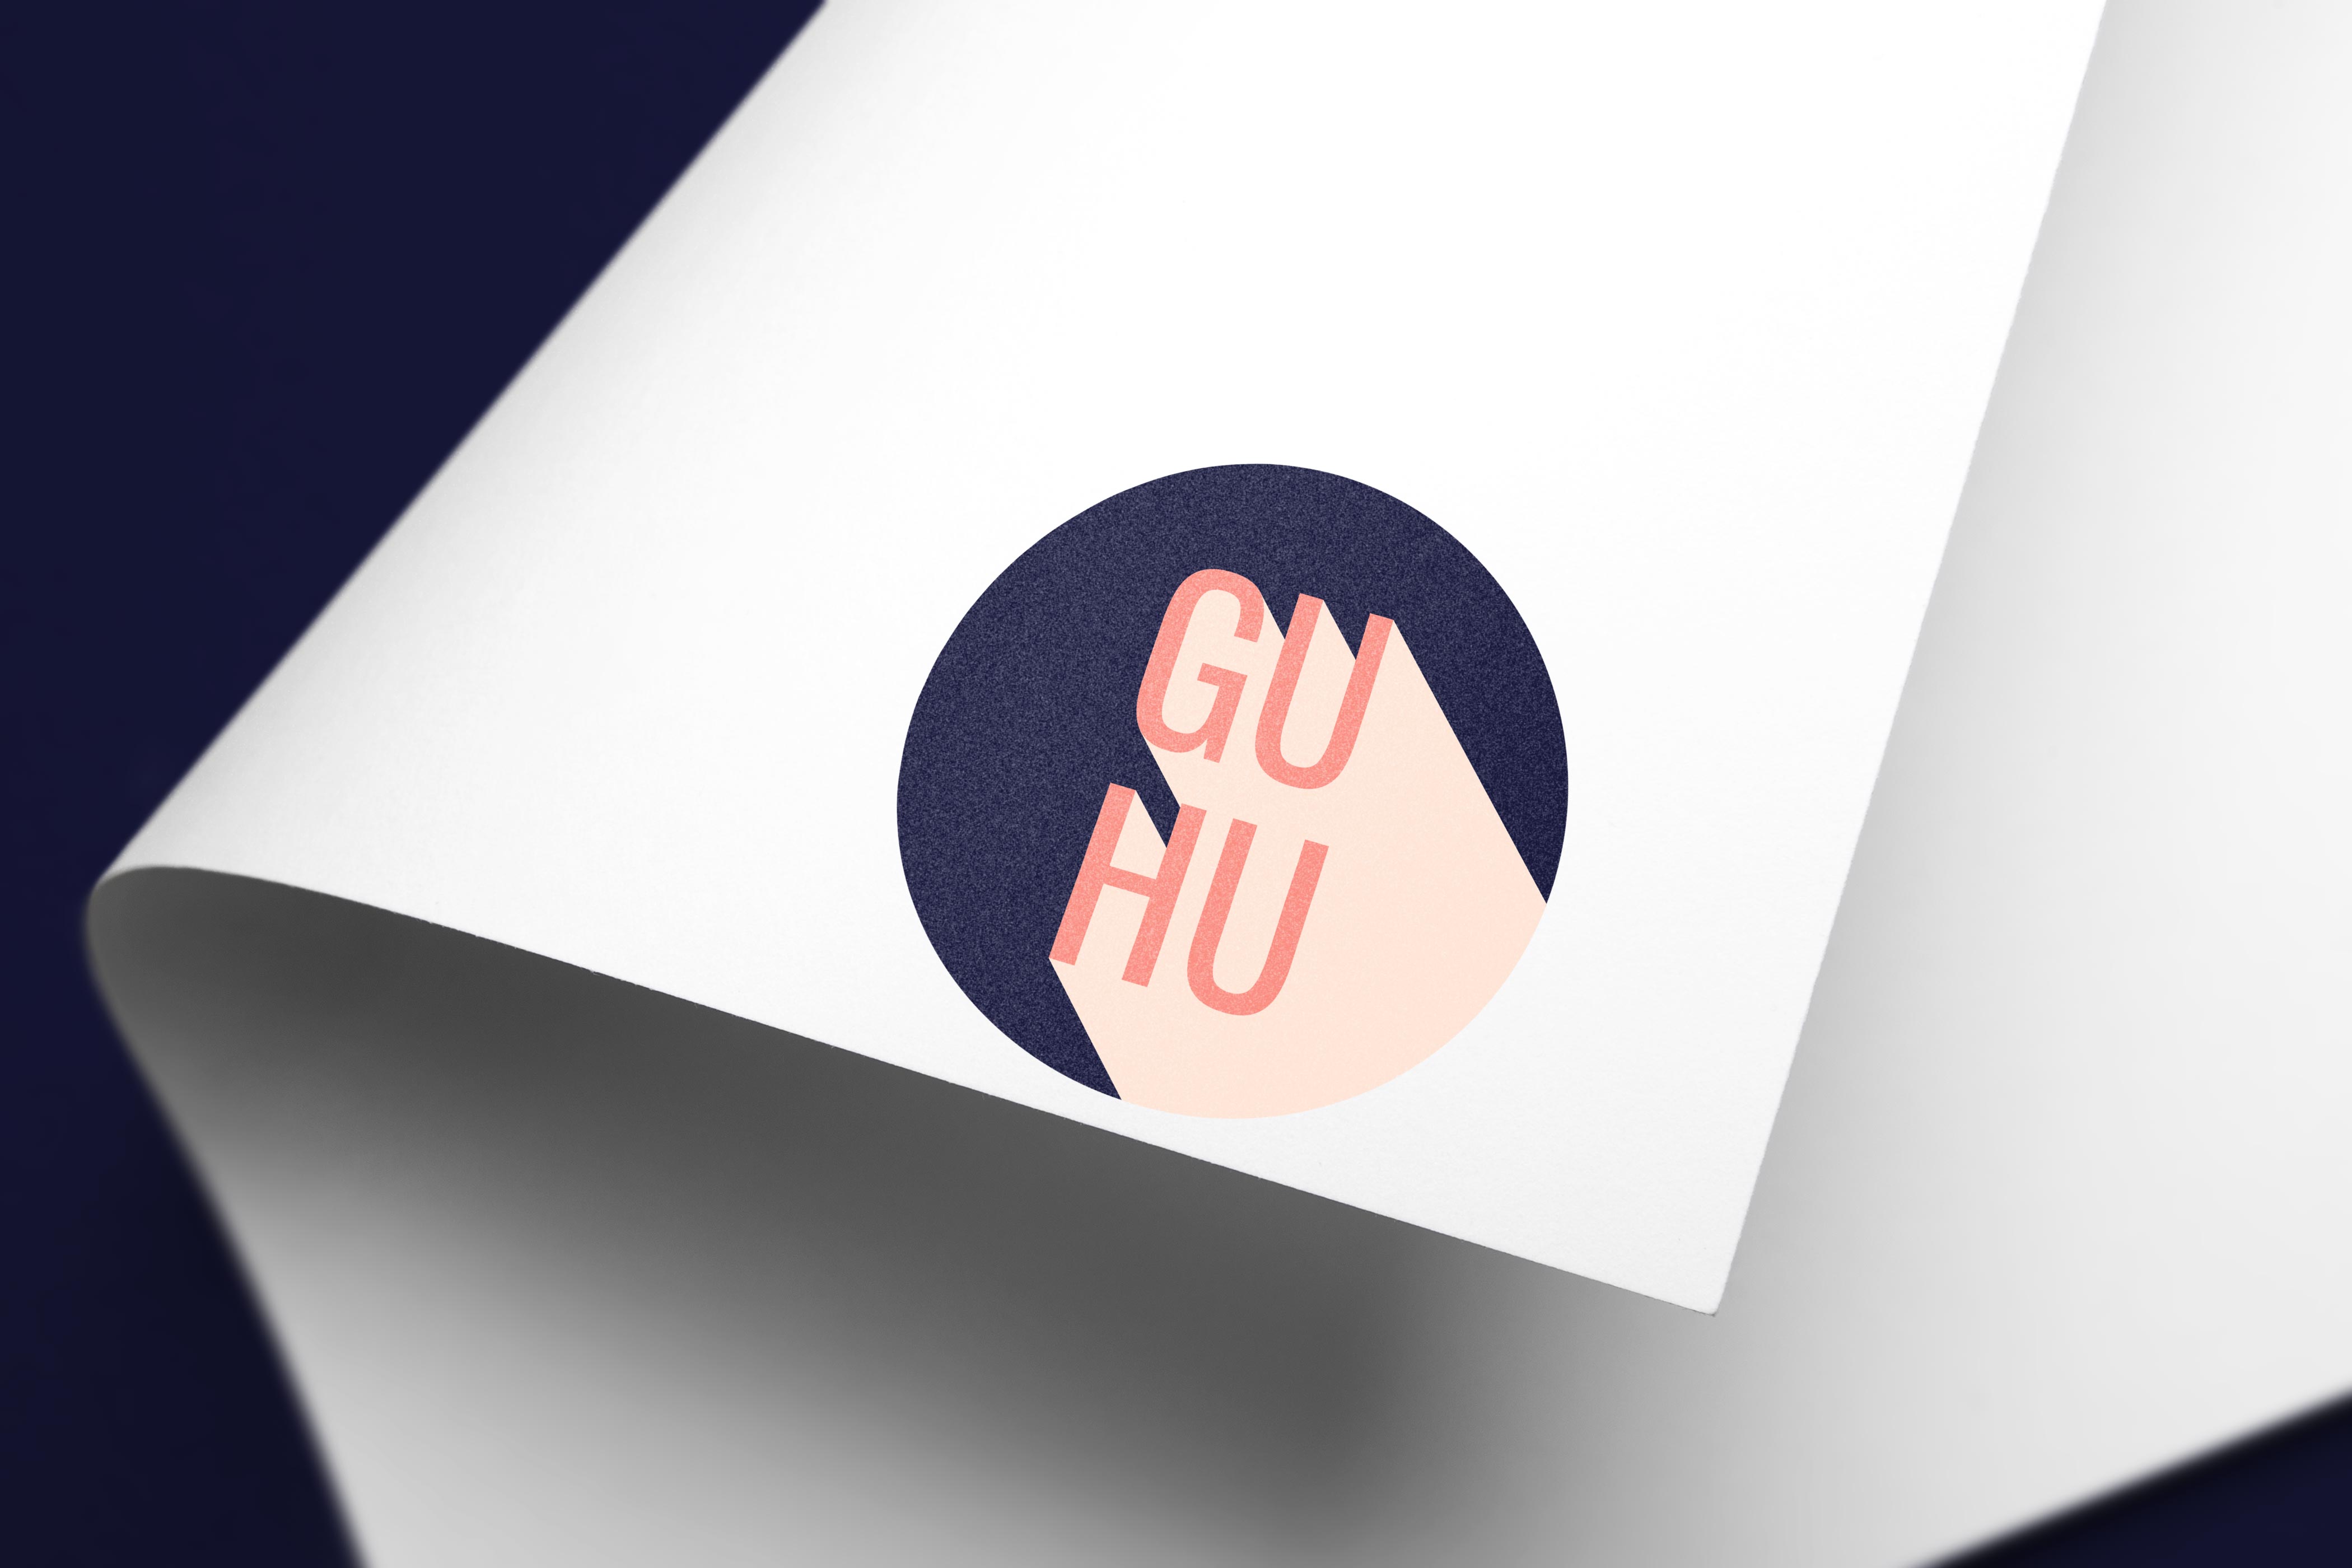 GuHu Media Society logo for light backgrounds